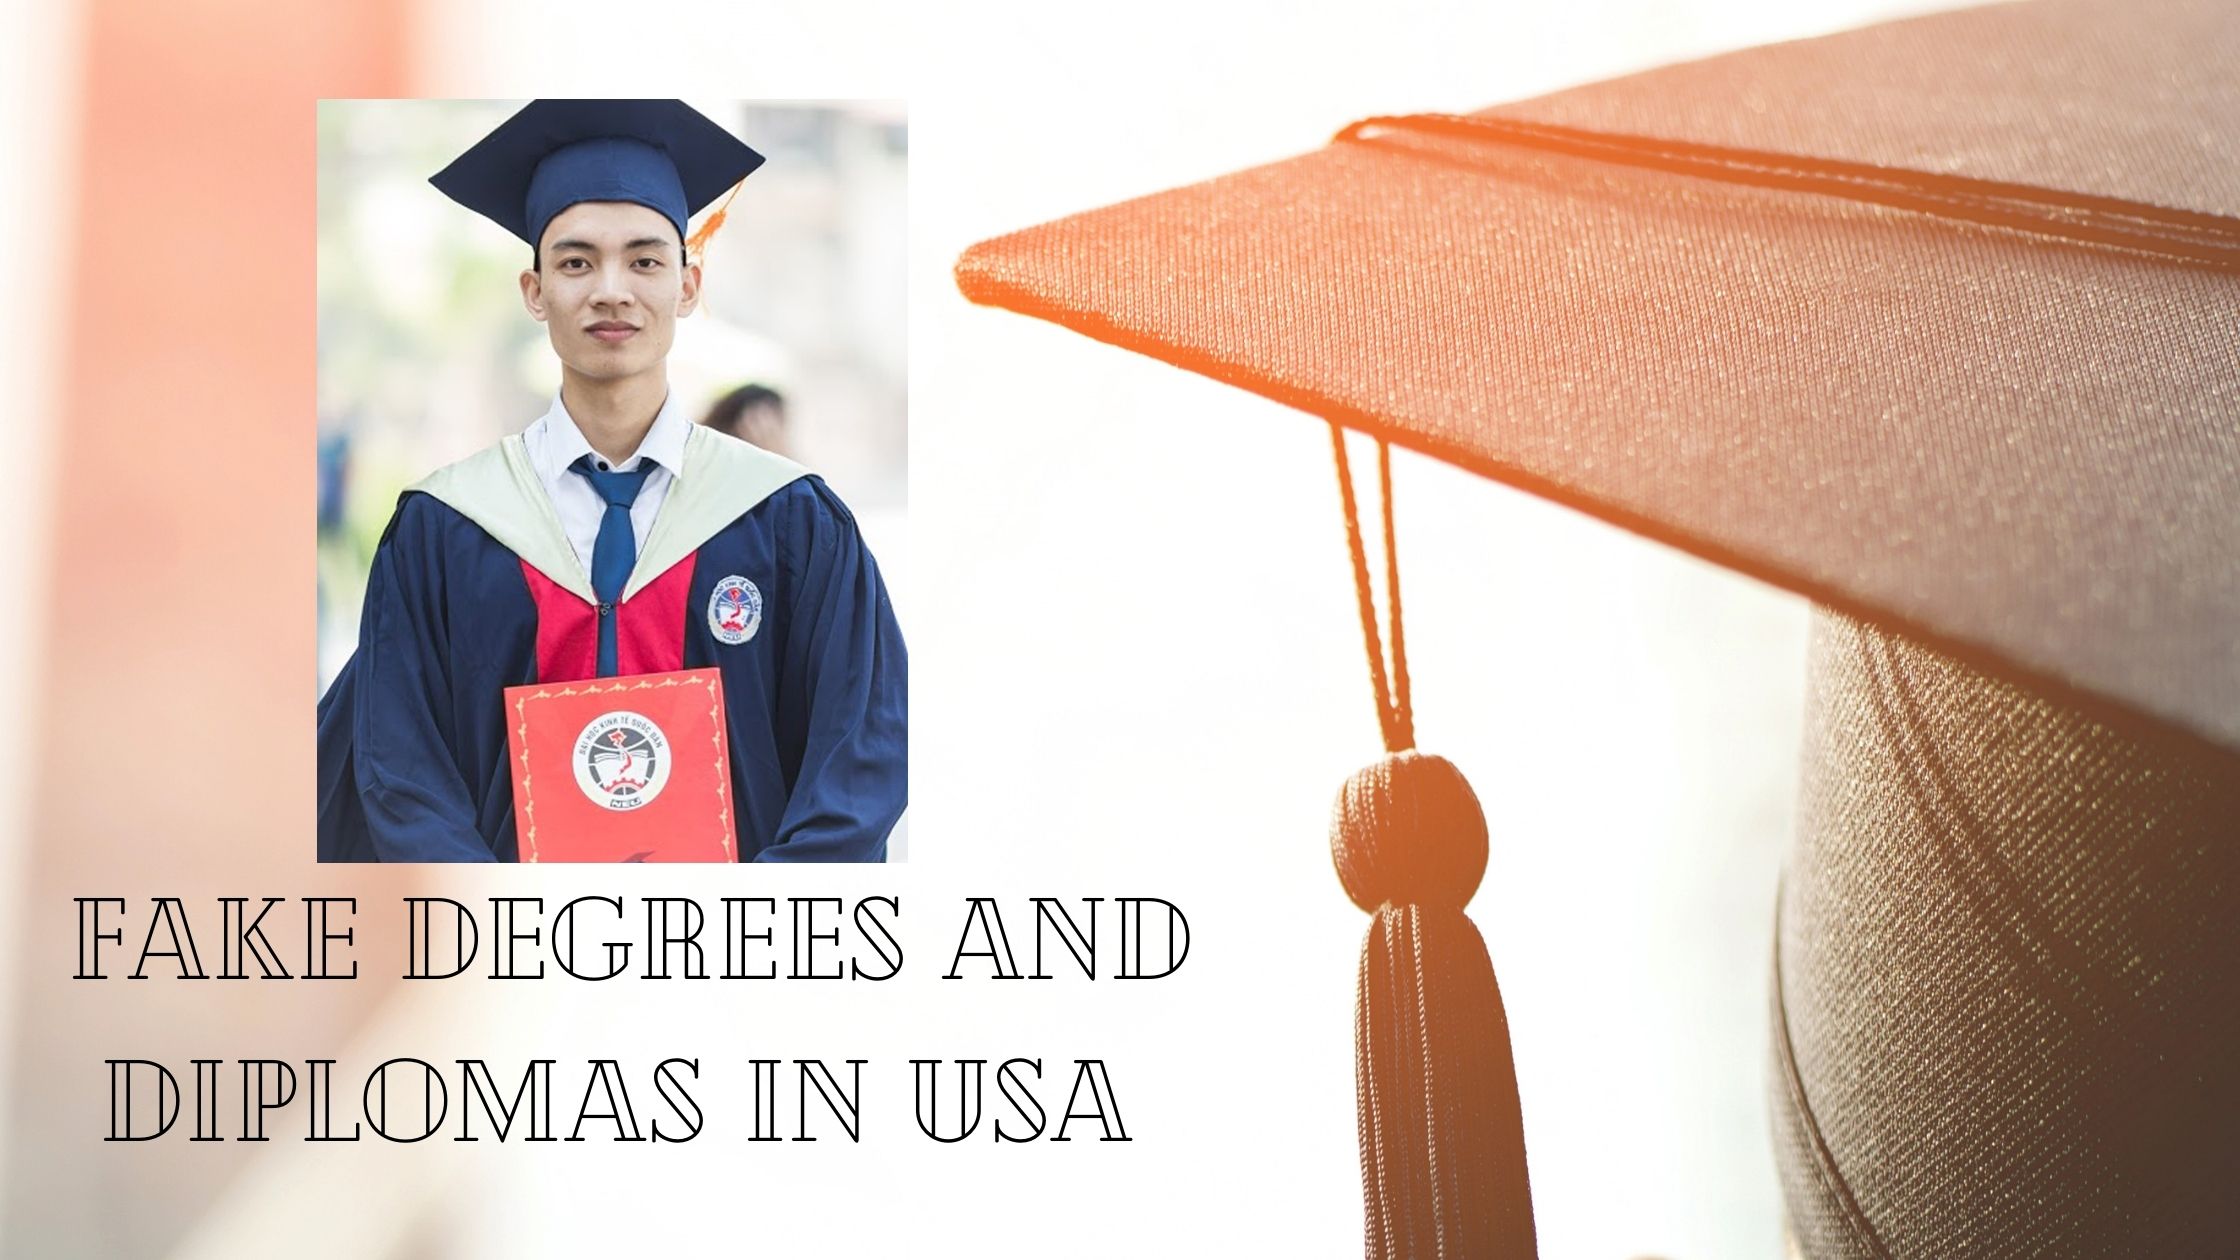 Fake Degrees and Diplomas in USA